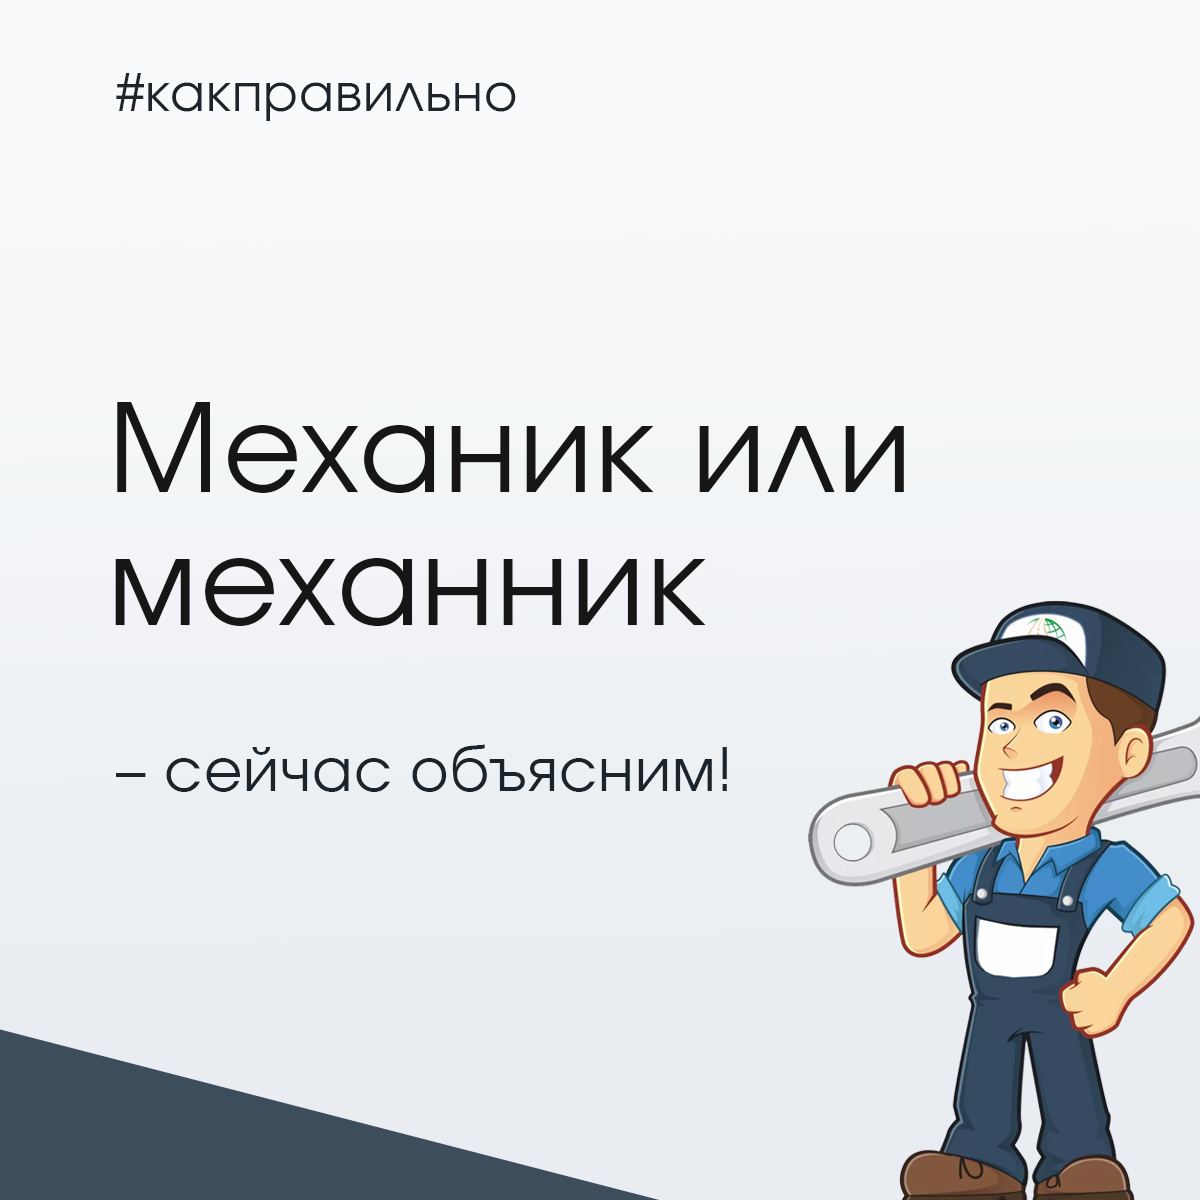 Установка русского языка в телеграмм фото 106